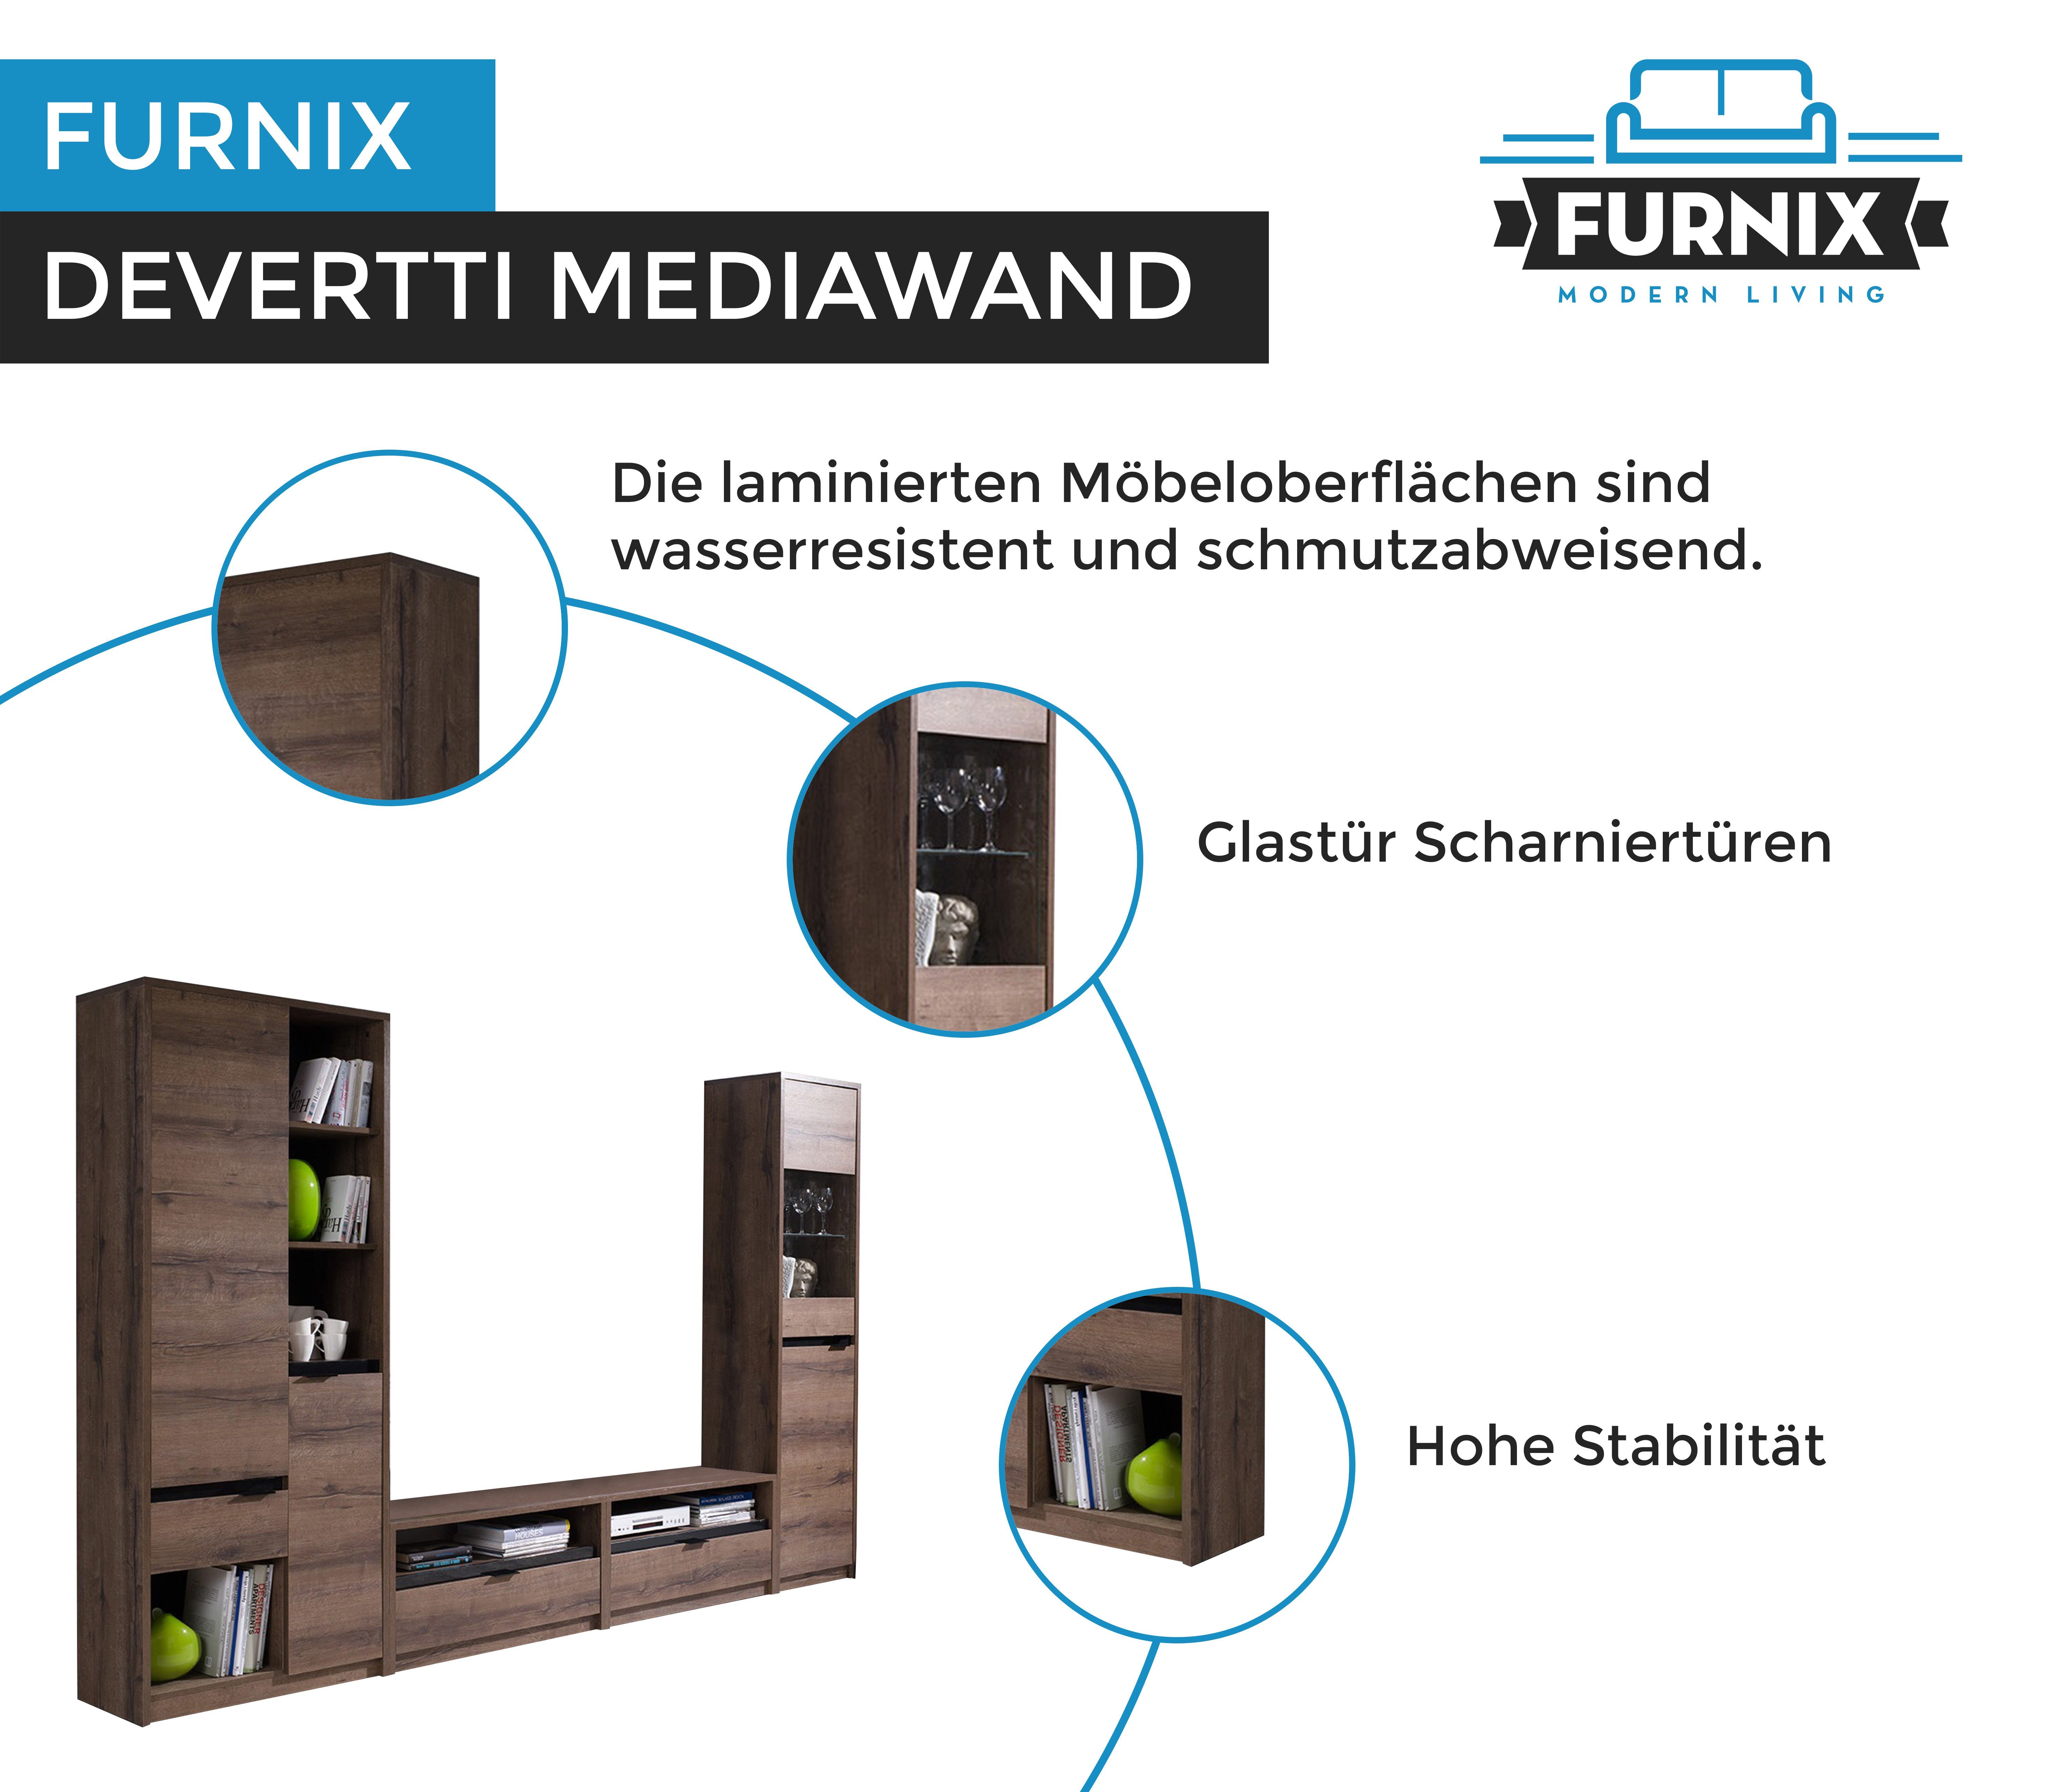 Furnix TV-Schrank, Wohnwand beinh: DEVERTTI 2x Standvitrine 4-teilige Hochregal, Monastery/Schwarz Glanz, Mediawand 1